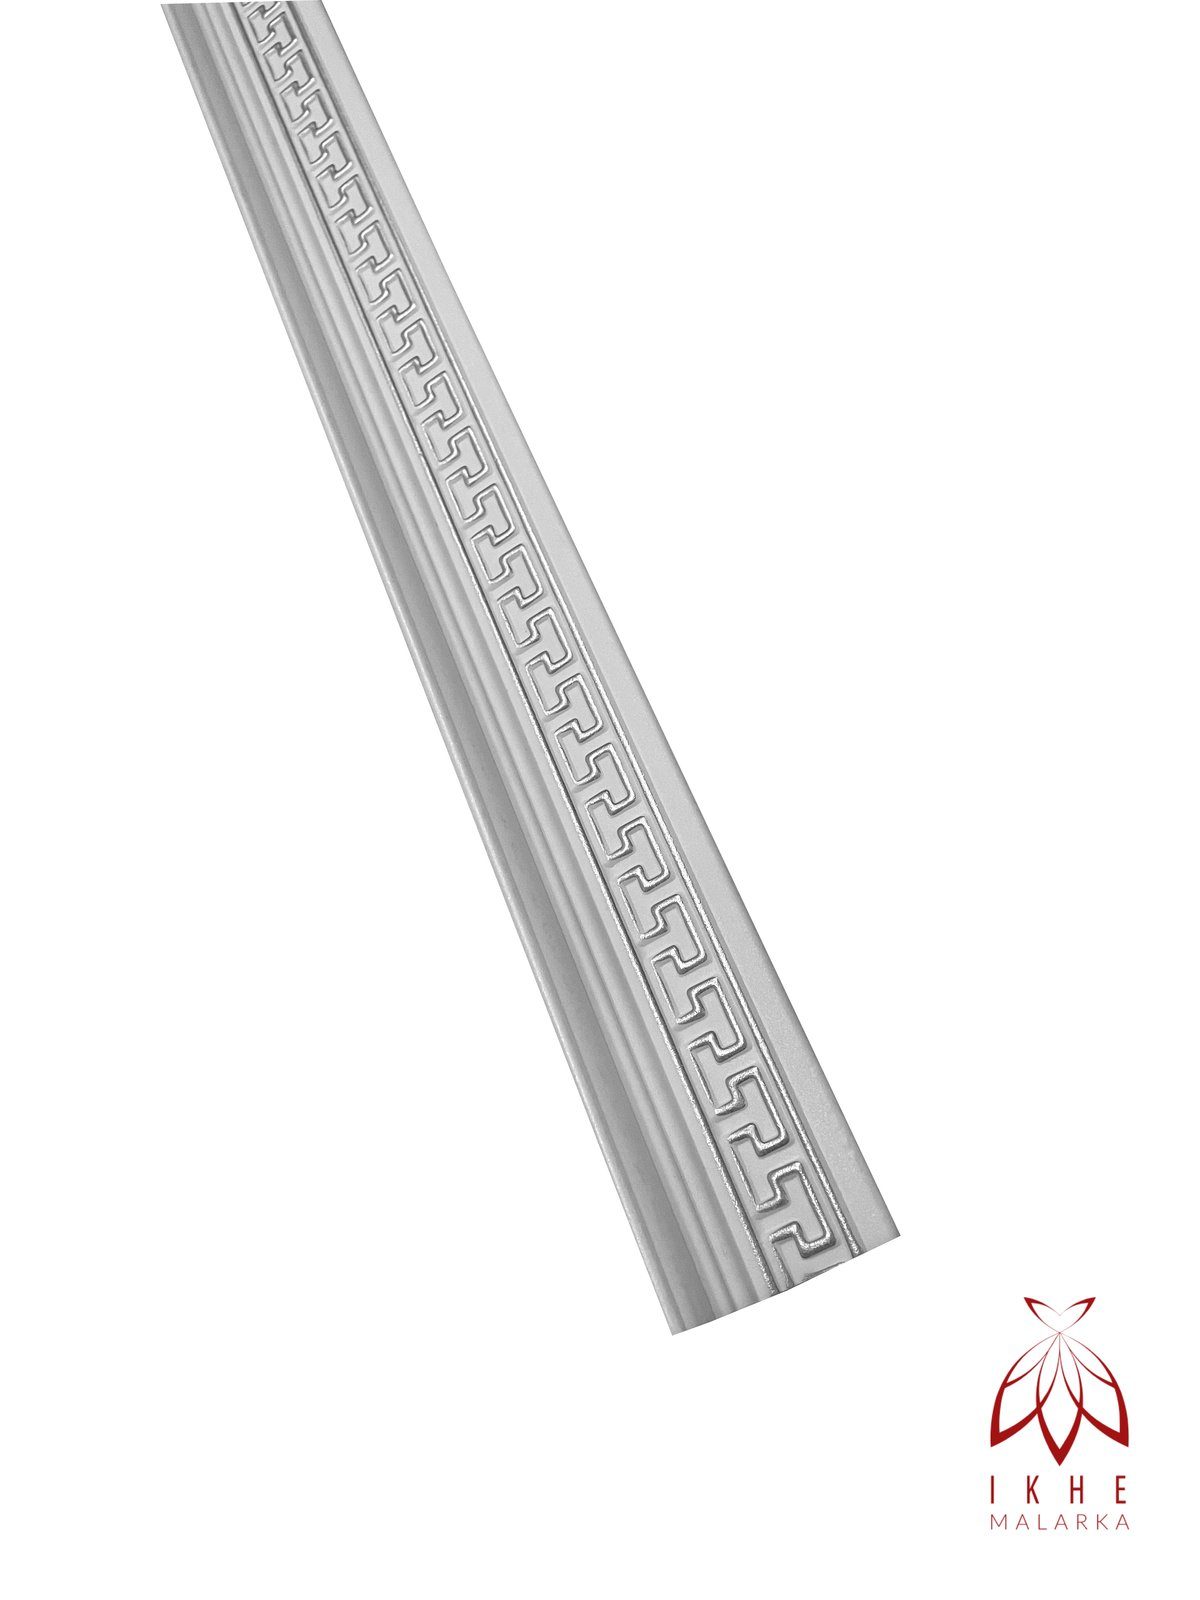 IKHEMalarka Sockelleiste Dekorleisten Styroporleisten Stuckleisten Zierprofile, 8 Stück = 8 Meter! M17B-S